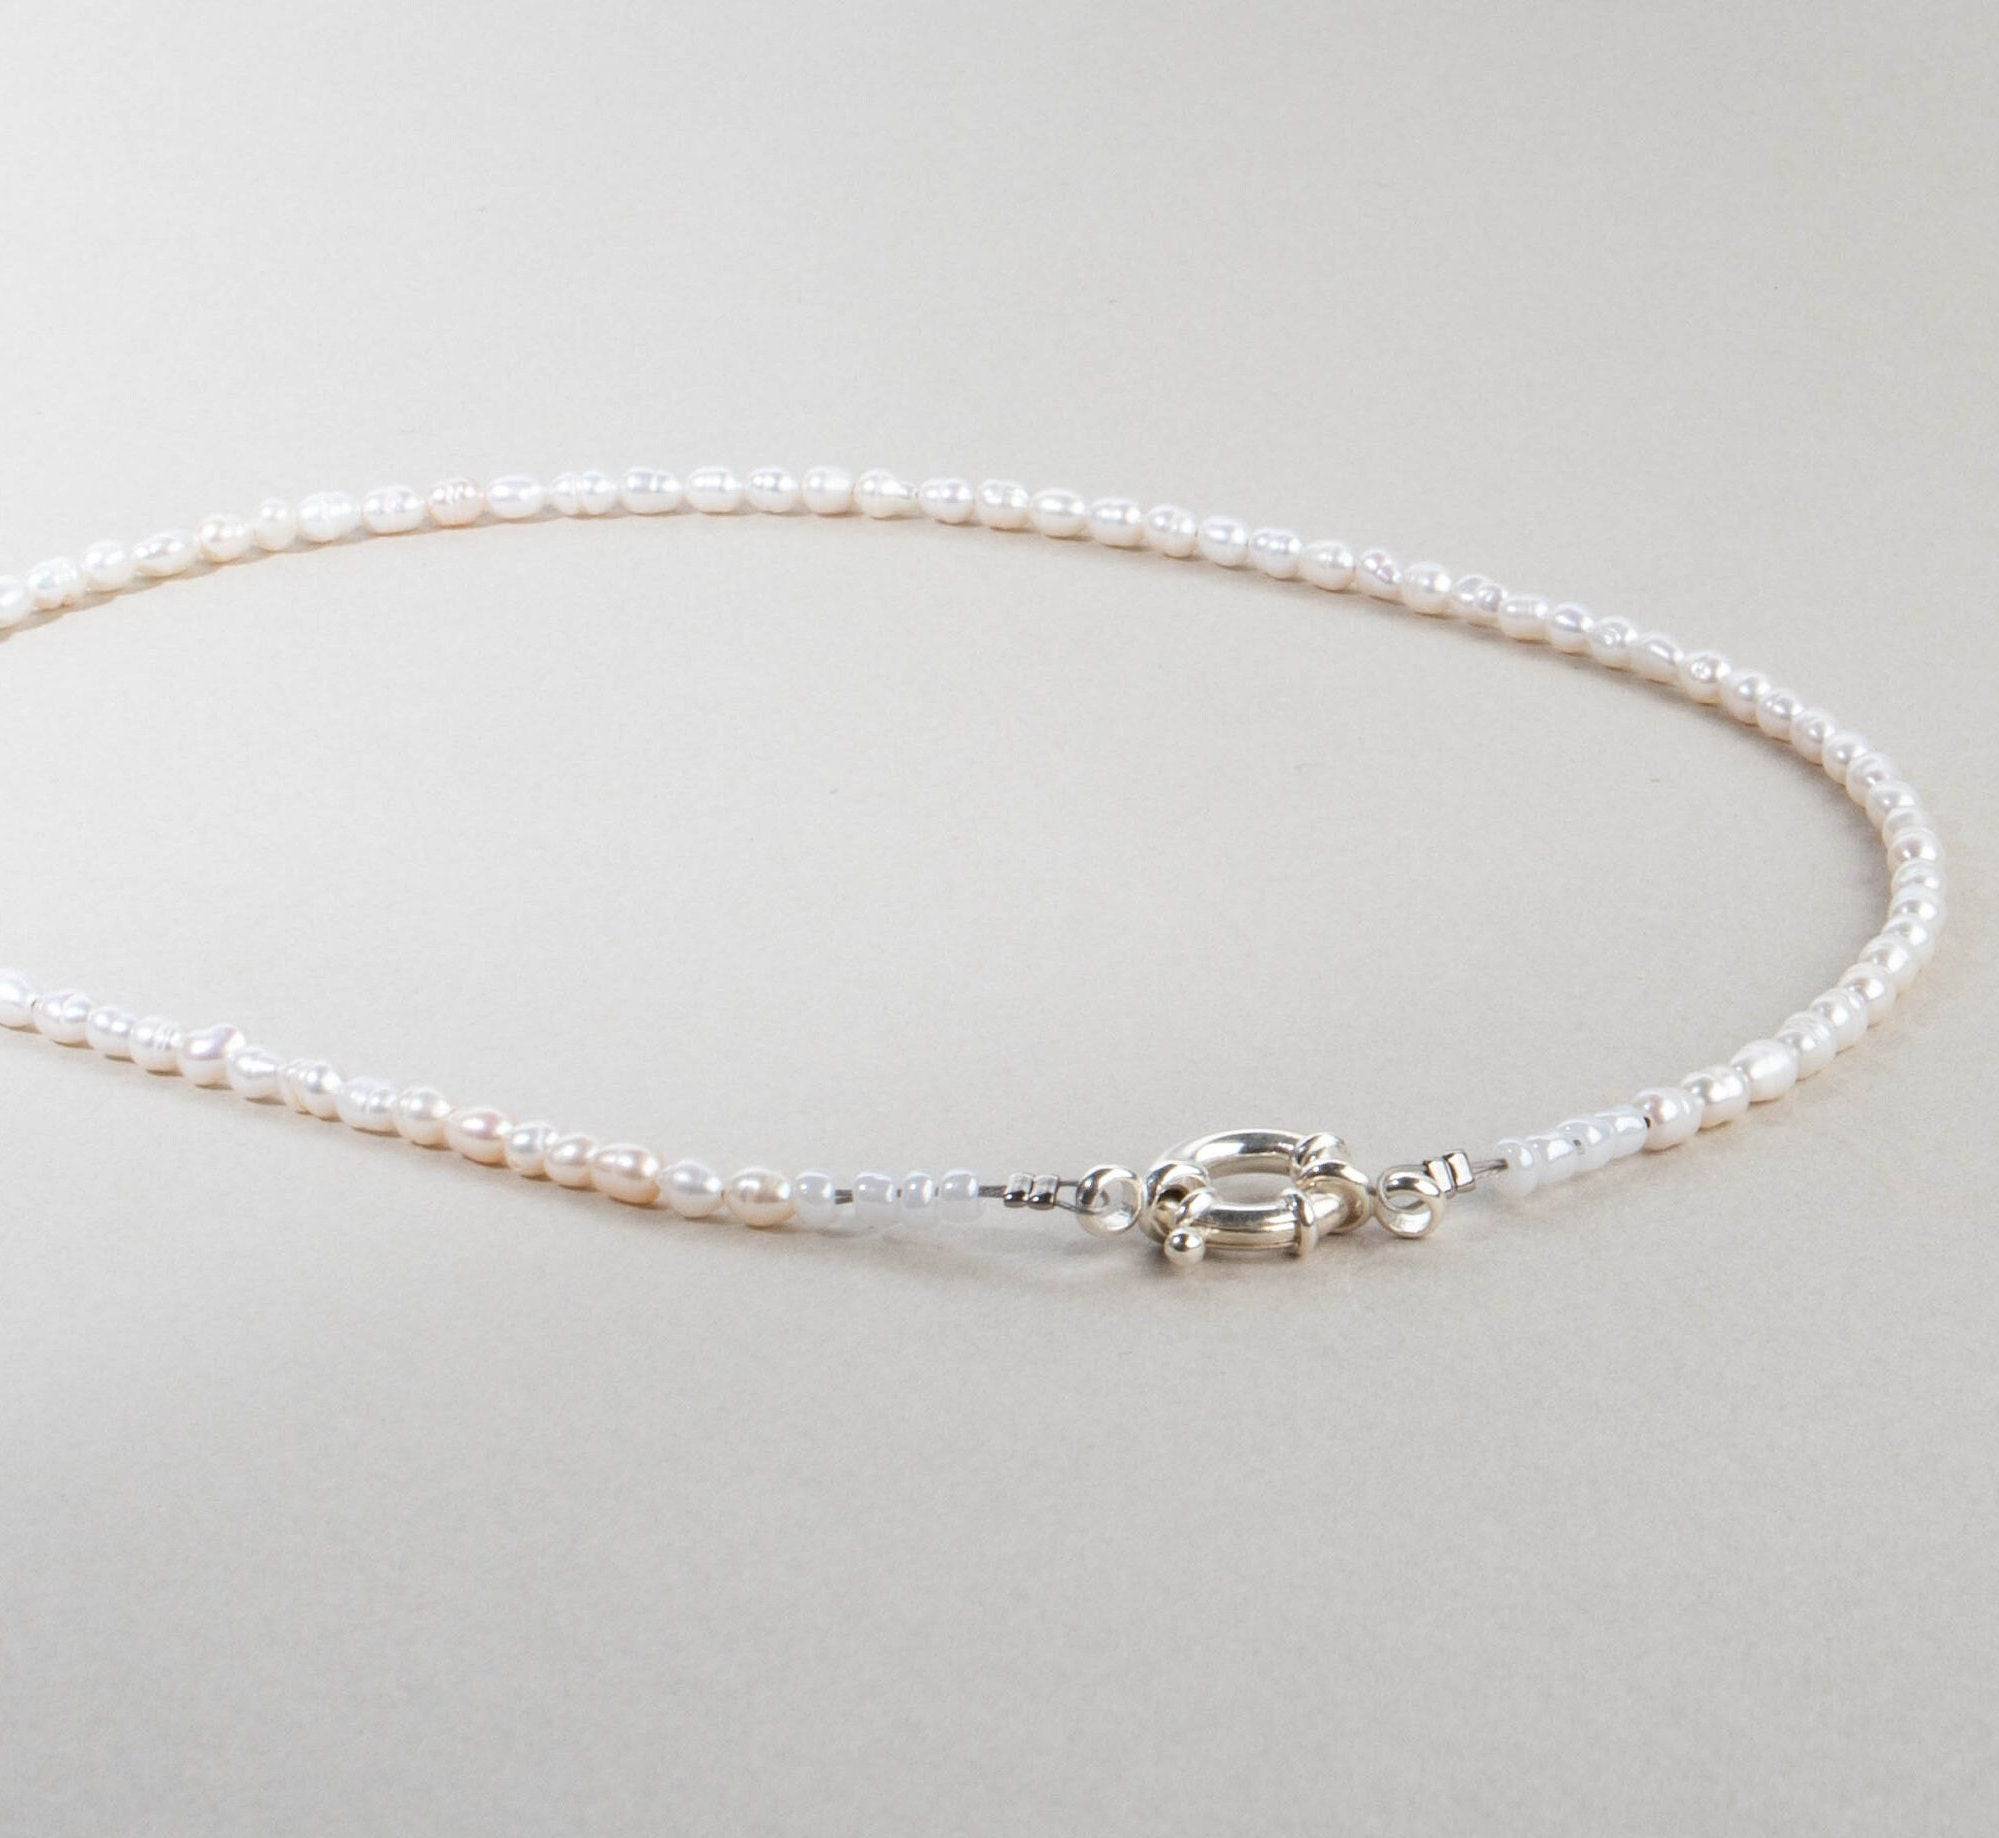 Perlenkette Choker Kette weiß silber handgemacht - NooeBerlin